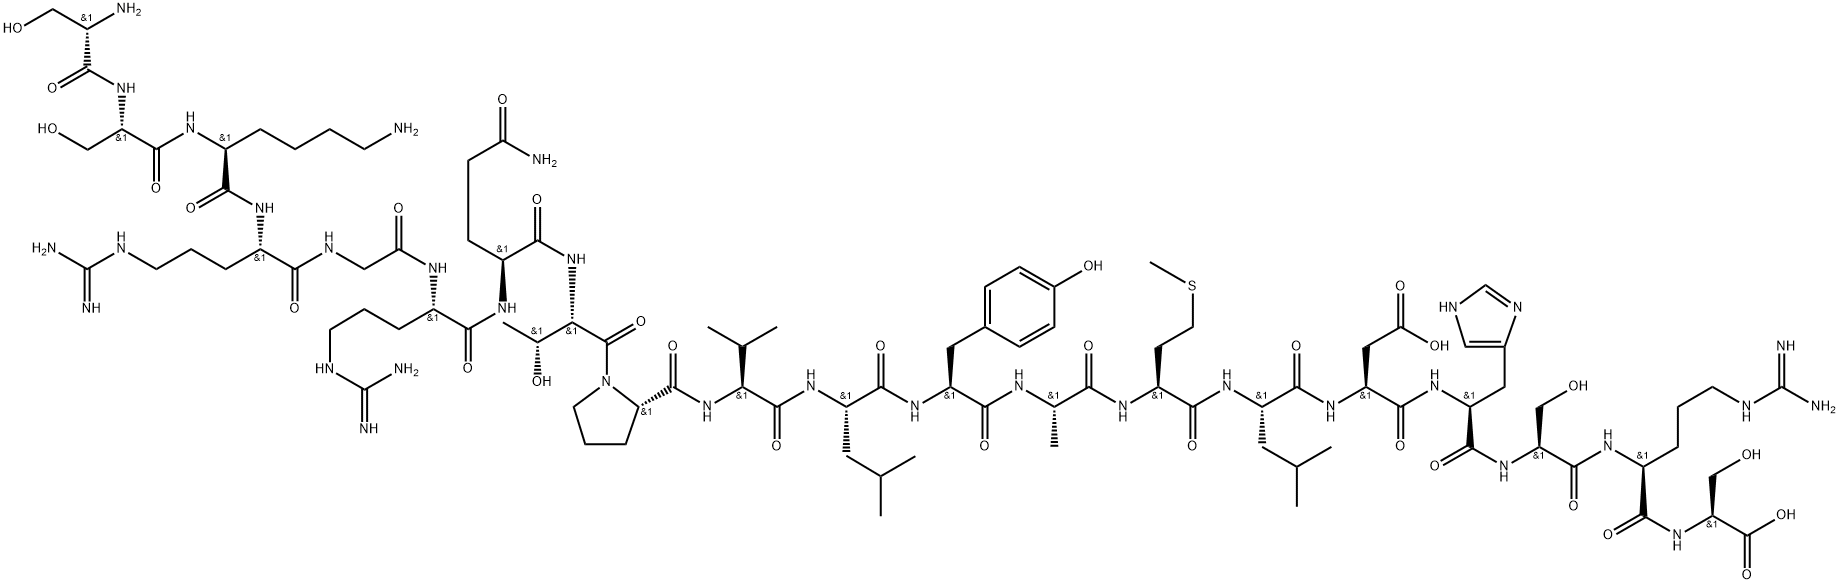 L-Serine, L-seryl-L-seryl-L-lysyl-L-arginylglycyl-L-arginyl-L-glutaminyl-L-threonyl-L-prolyl-L-valyl-L-leucyl-L-tyrosyl-L-alanyl-L-methionyl-L-leucyl-L-α-aspartyl-L-histidyl-L-seryl-L-arginyl- Struktur